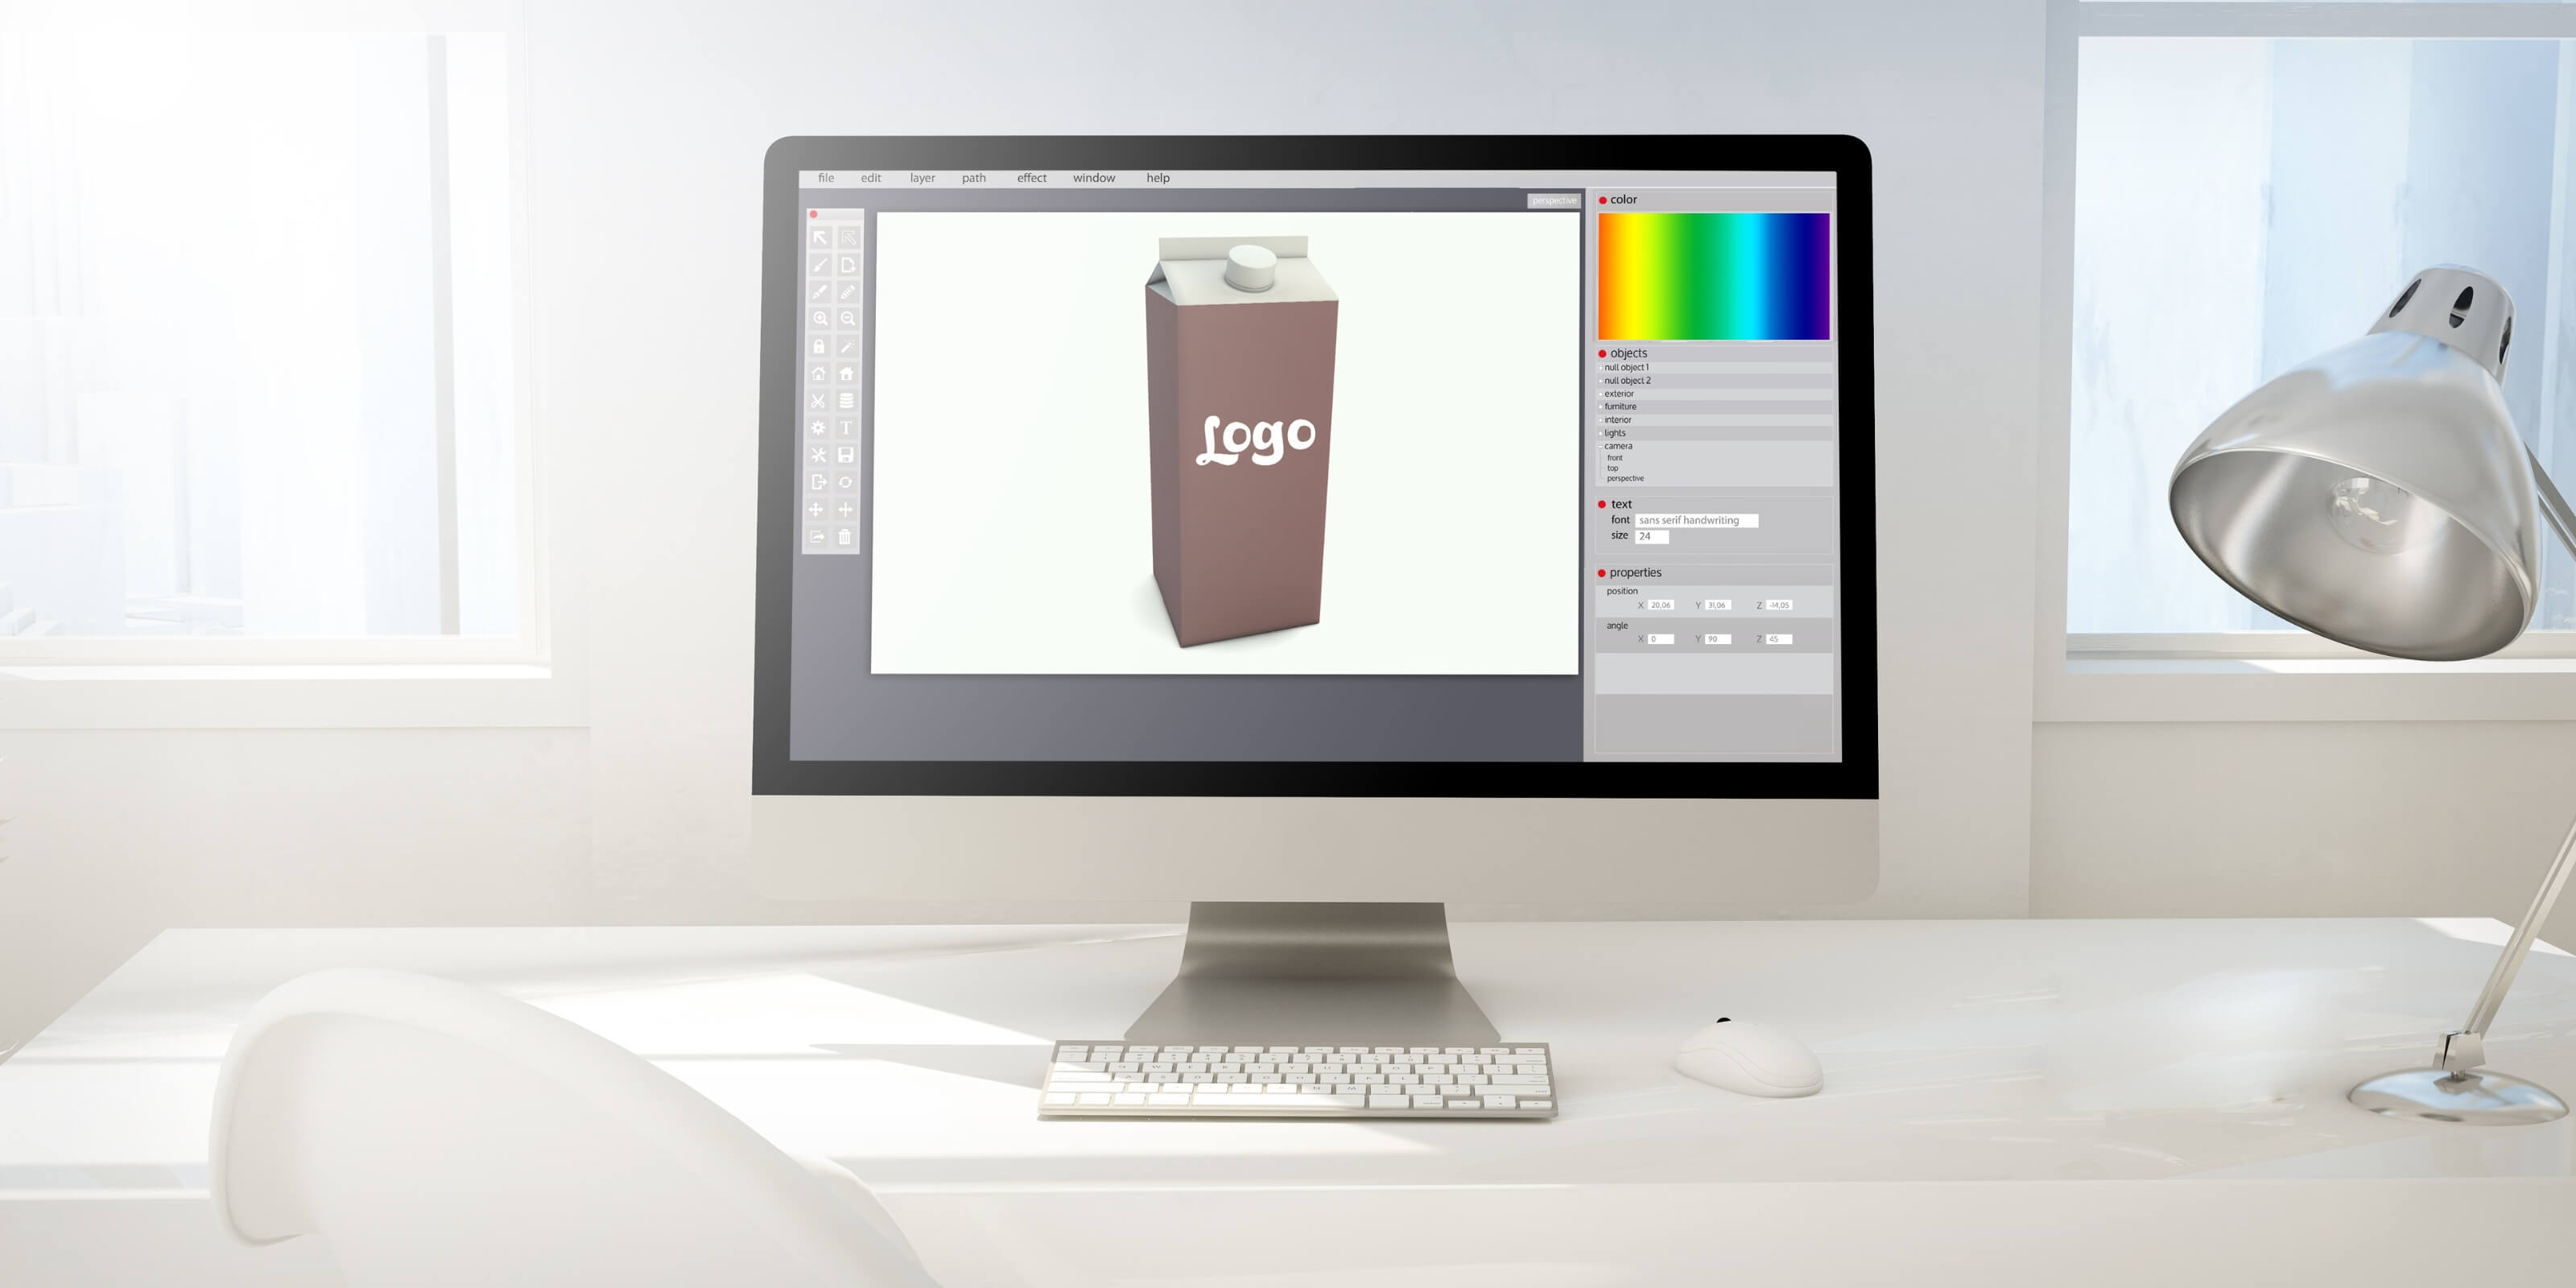 Packaging Design using a desktop